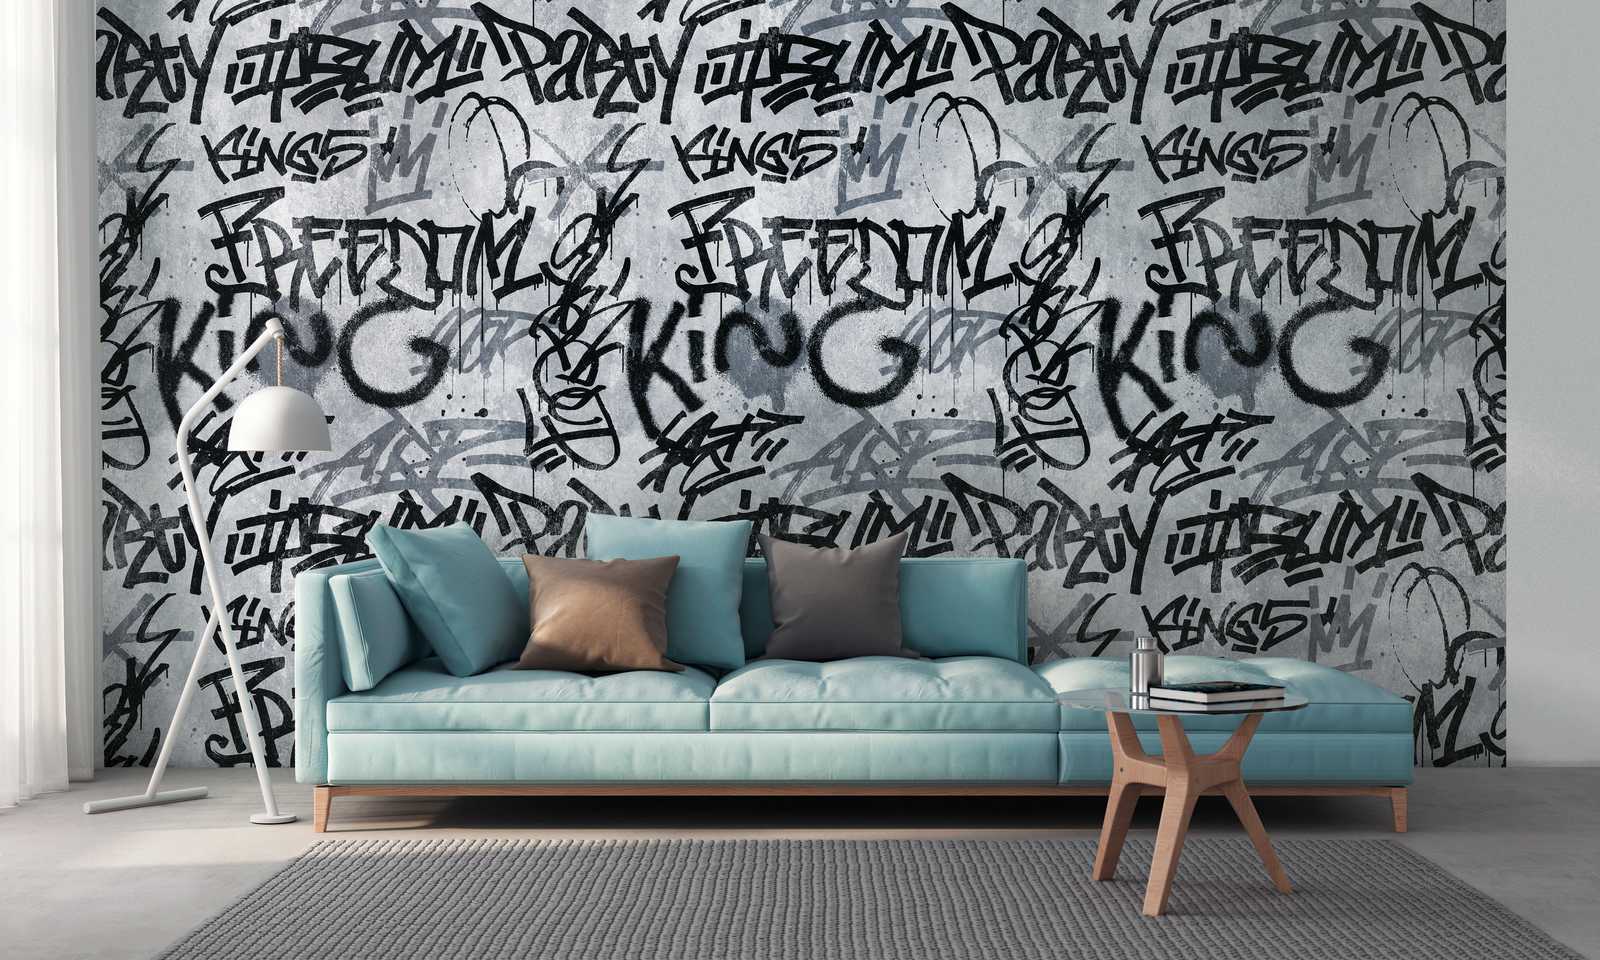             Behang nieuwigheid | motief behang graffiti & beton design, grijs & urban
        